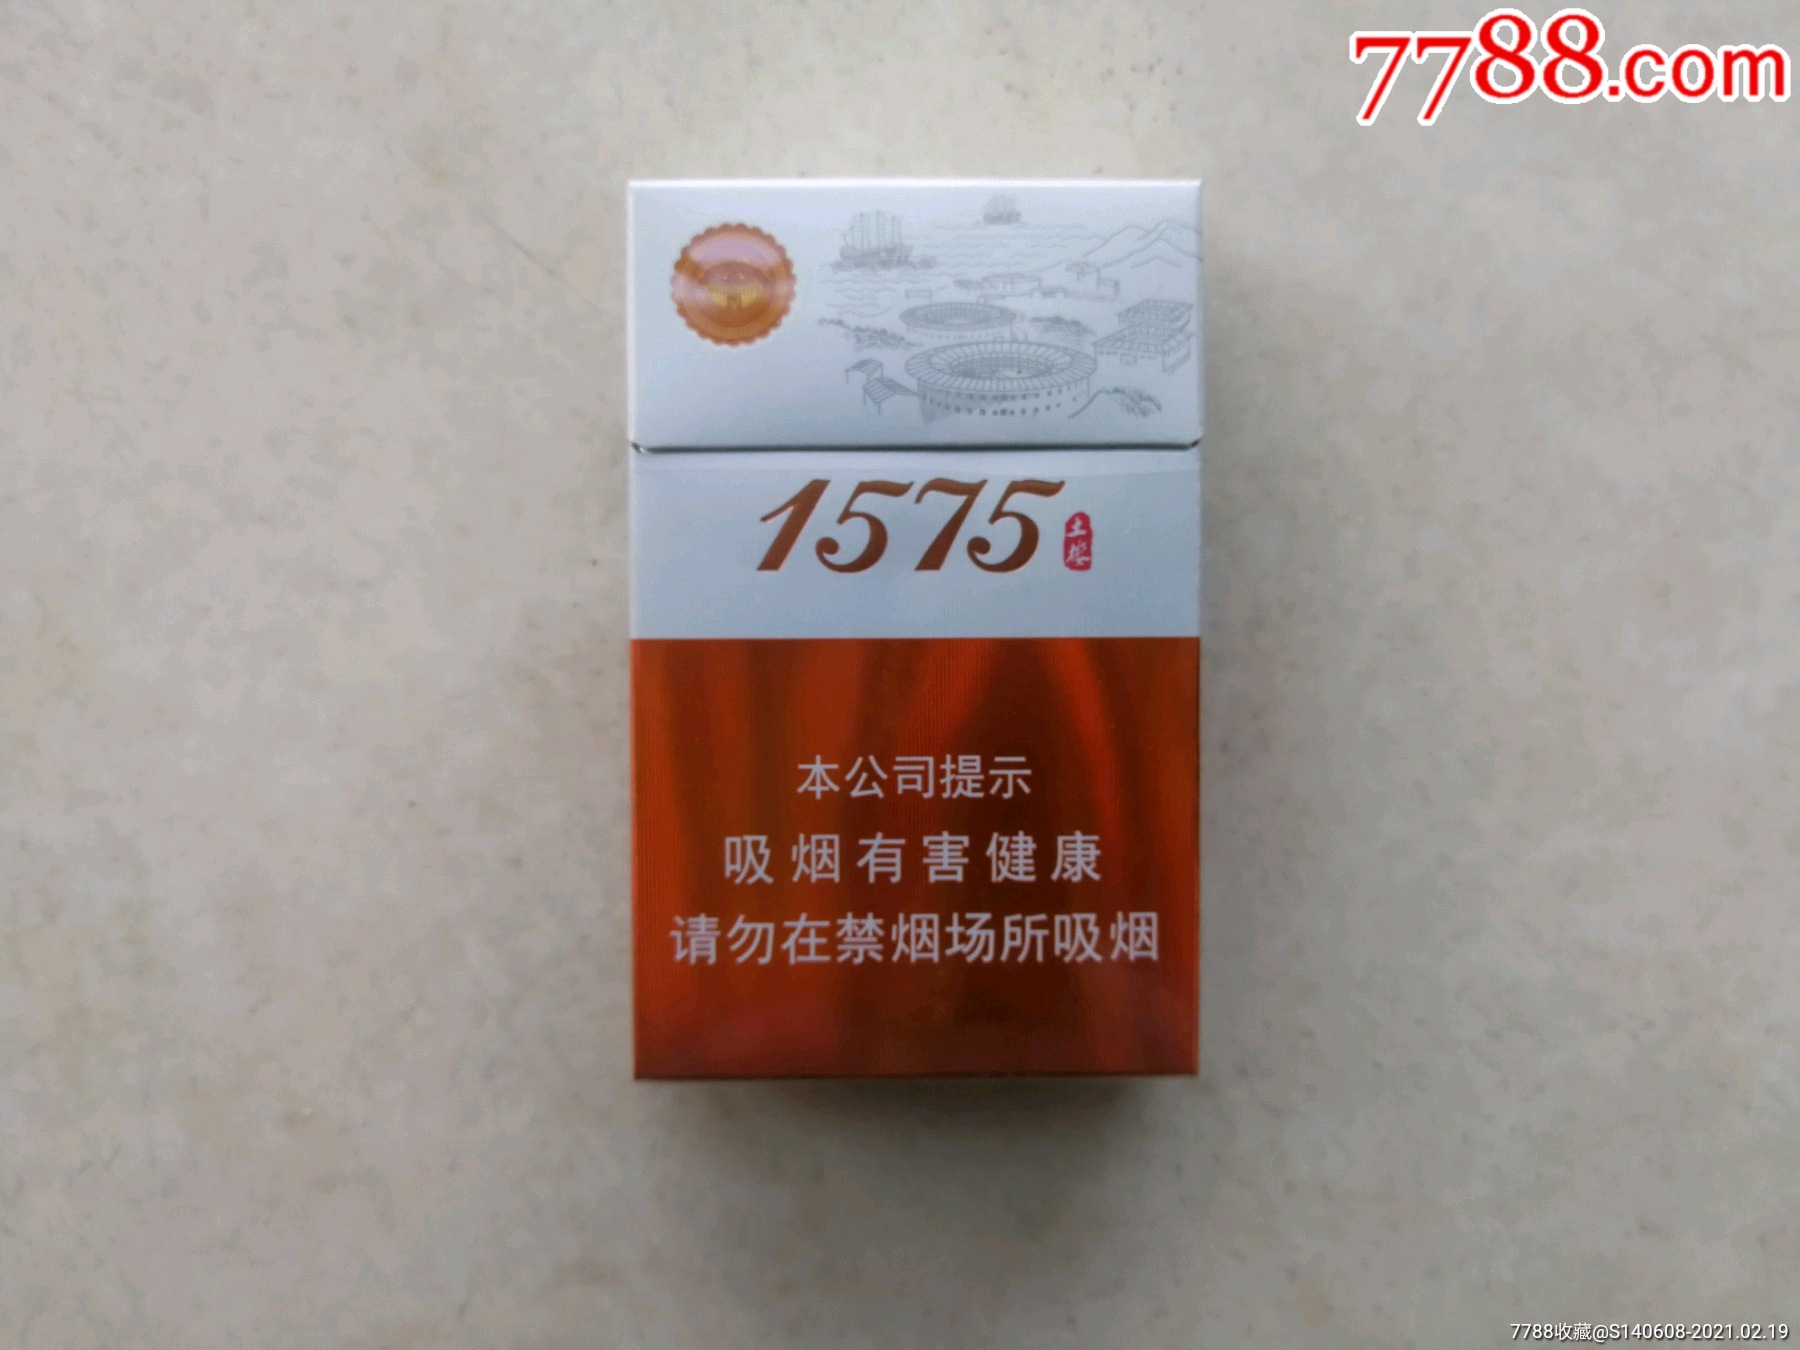 土楼香烟扁盒1575图片